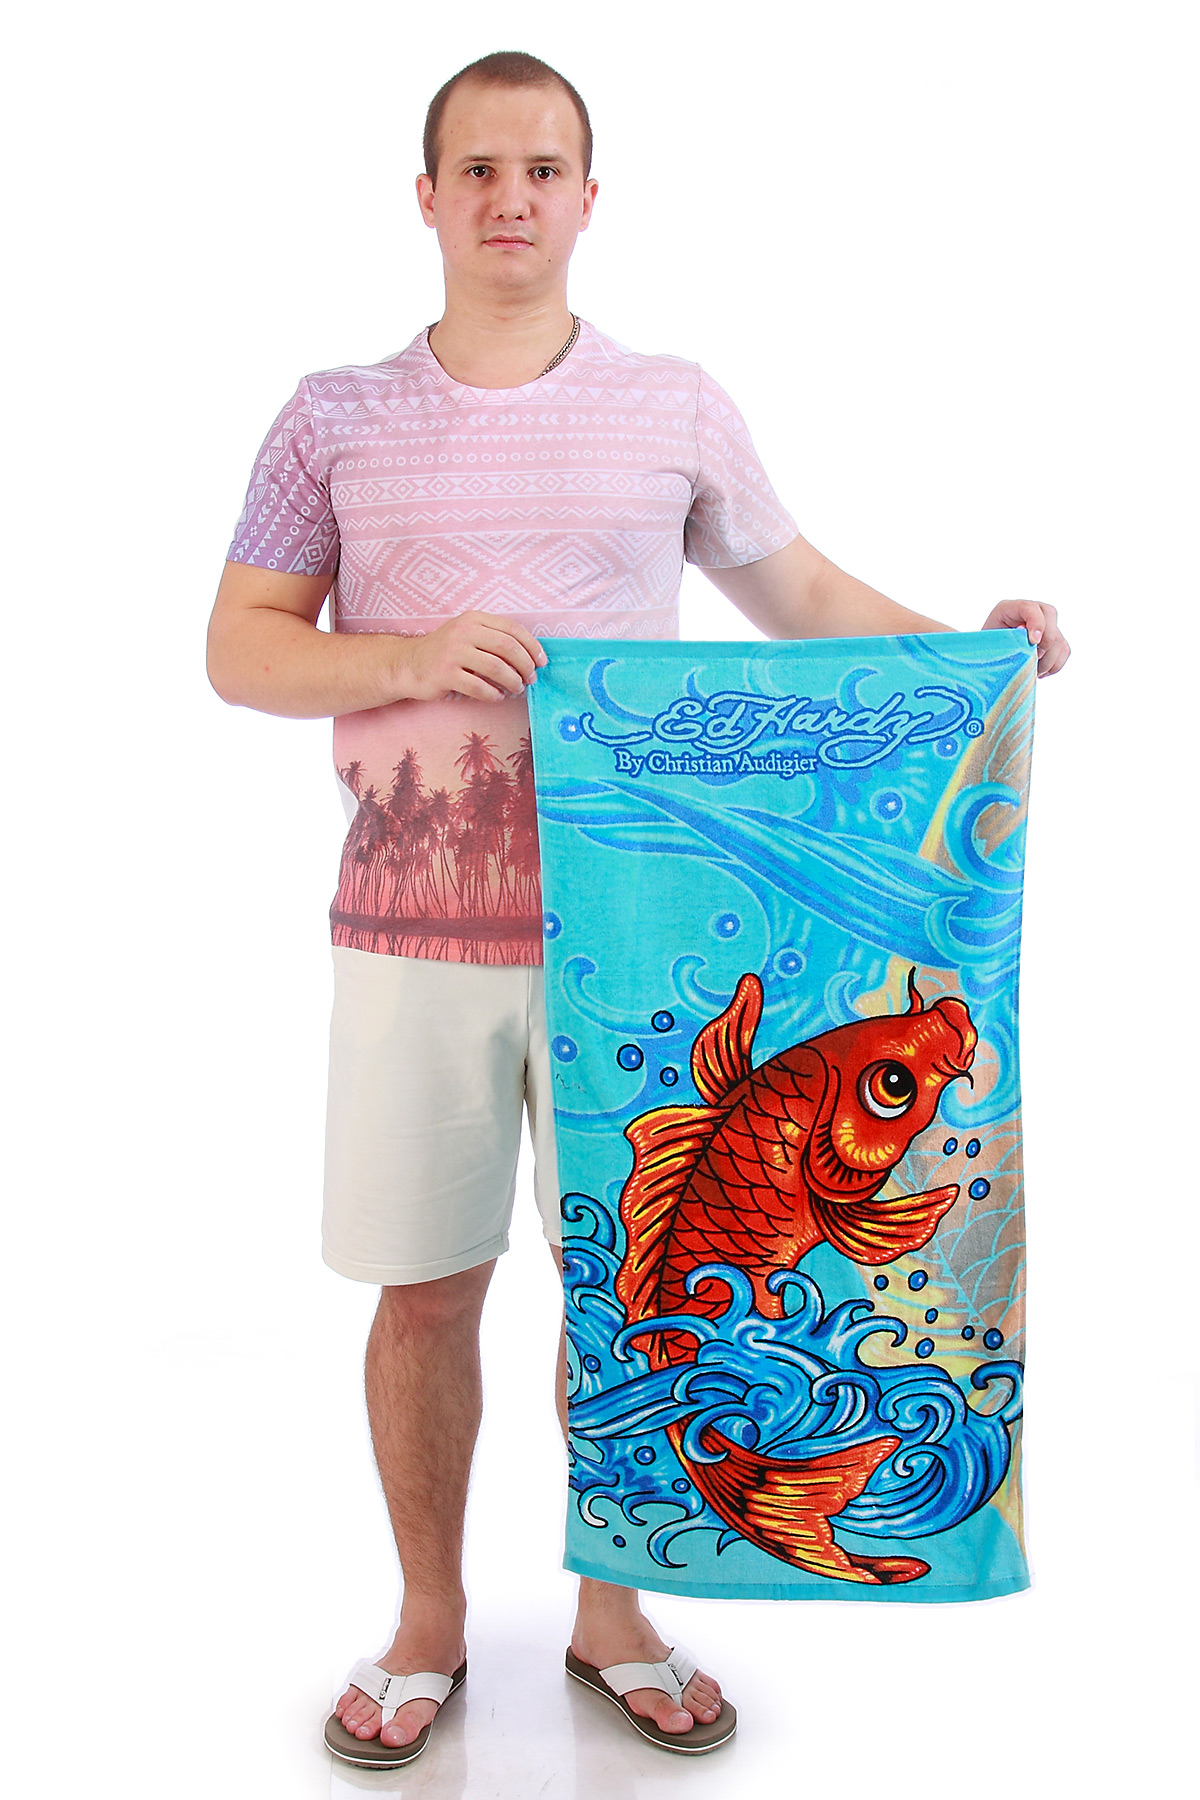 Полотенце с драконом. Полотенце рисунок. Пляжное полотенце. Пляжное полотенце рисунок. Большие полотенца с рисунком.